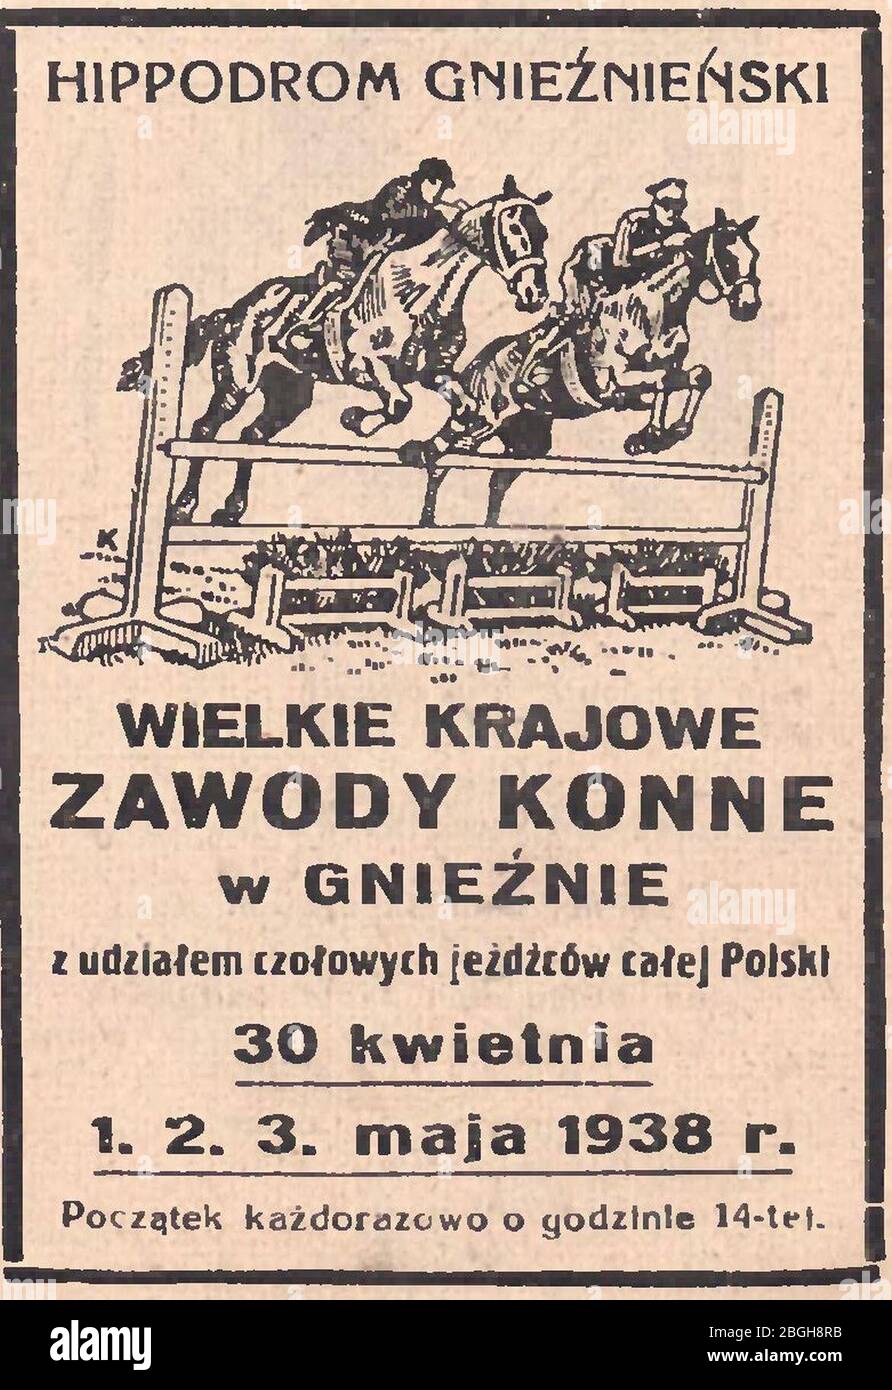 Hippodrom gnieźnieński - Wielkie zawody konne W Gnieźnie, 1938. Banque D'Images